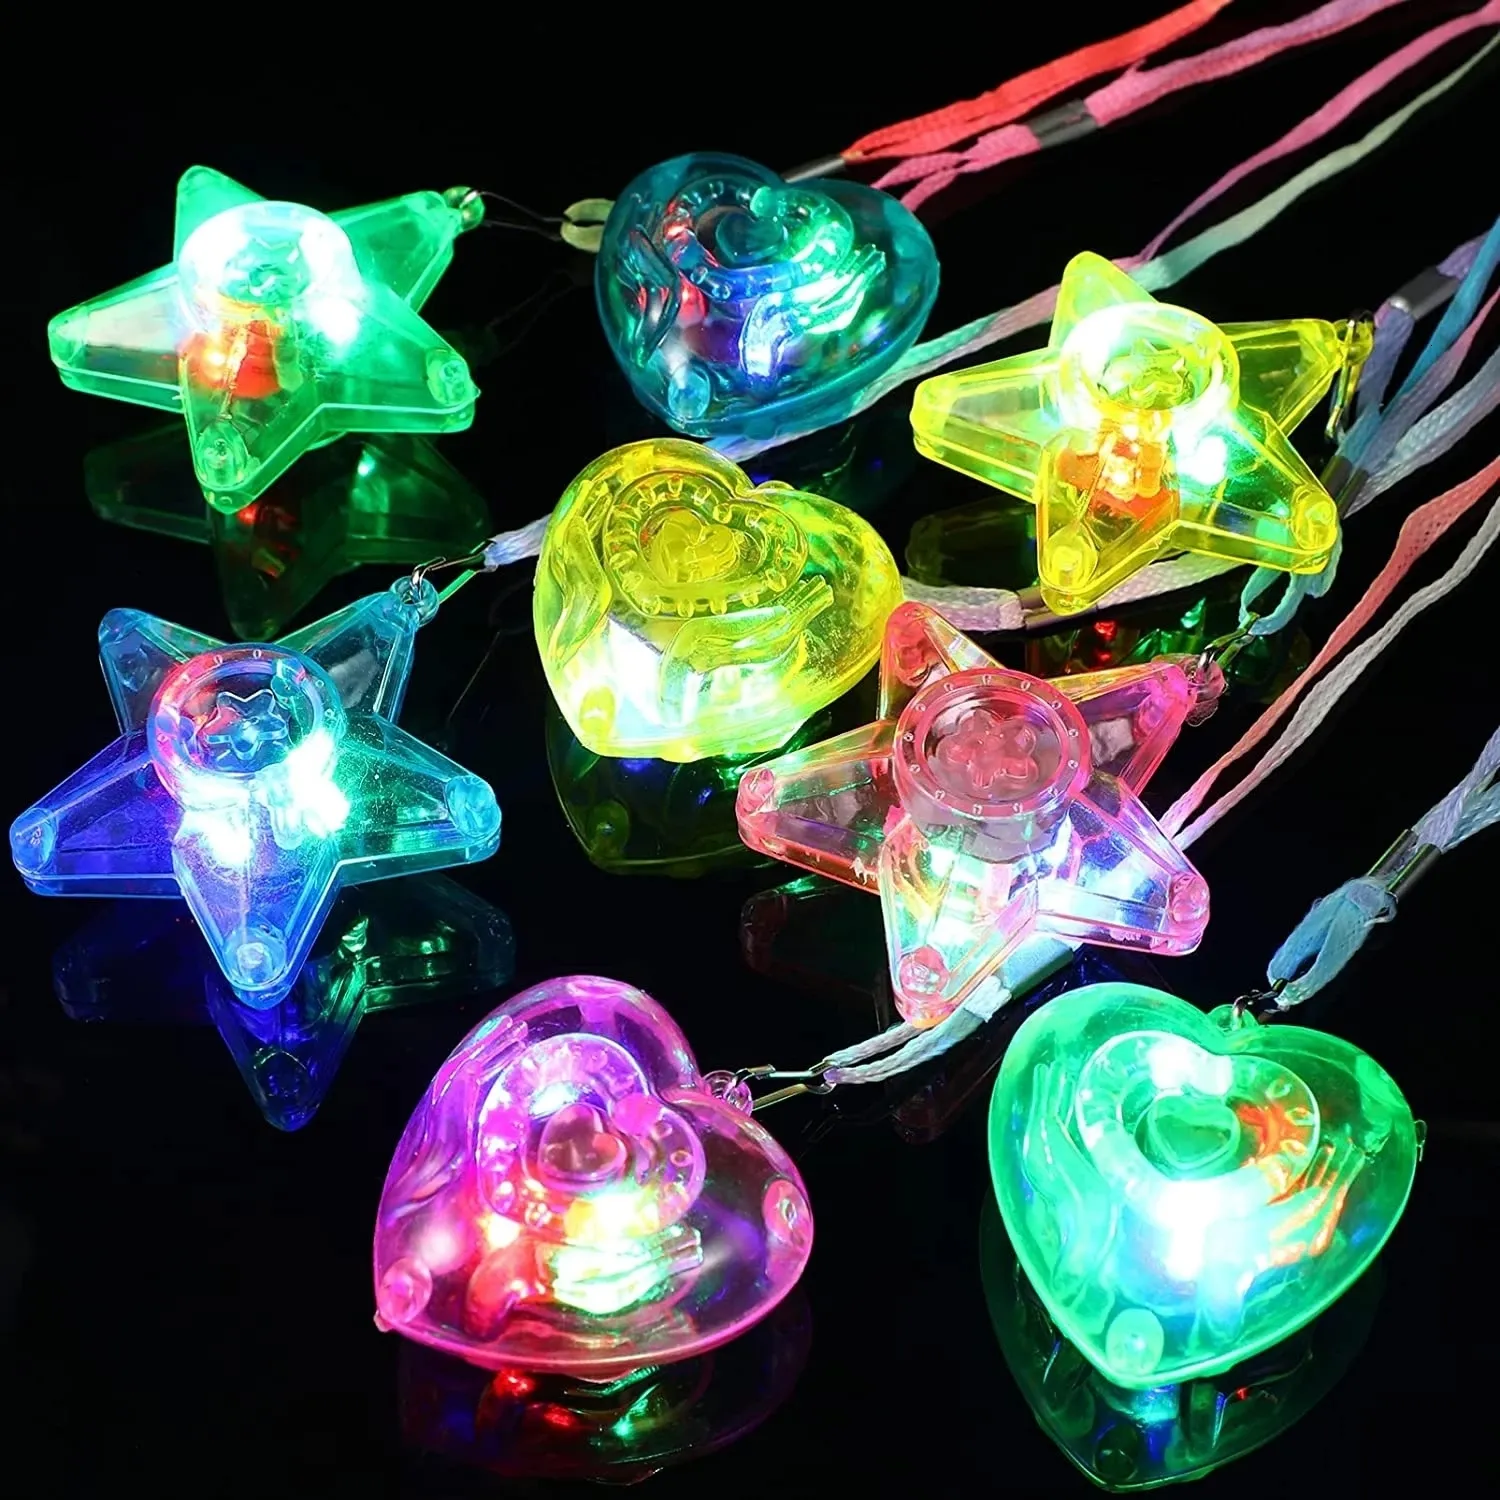 LED ışık çubukları 10/20pcs yıldız kalp yukarı oyuncak kolye kolye çocukları parıltılı hediye yanıp sönen oyuncak karnaval partisi navidad doğum günleri deko 221207